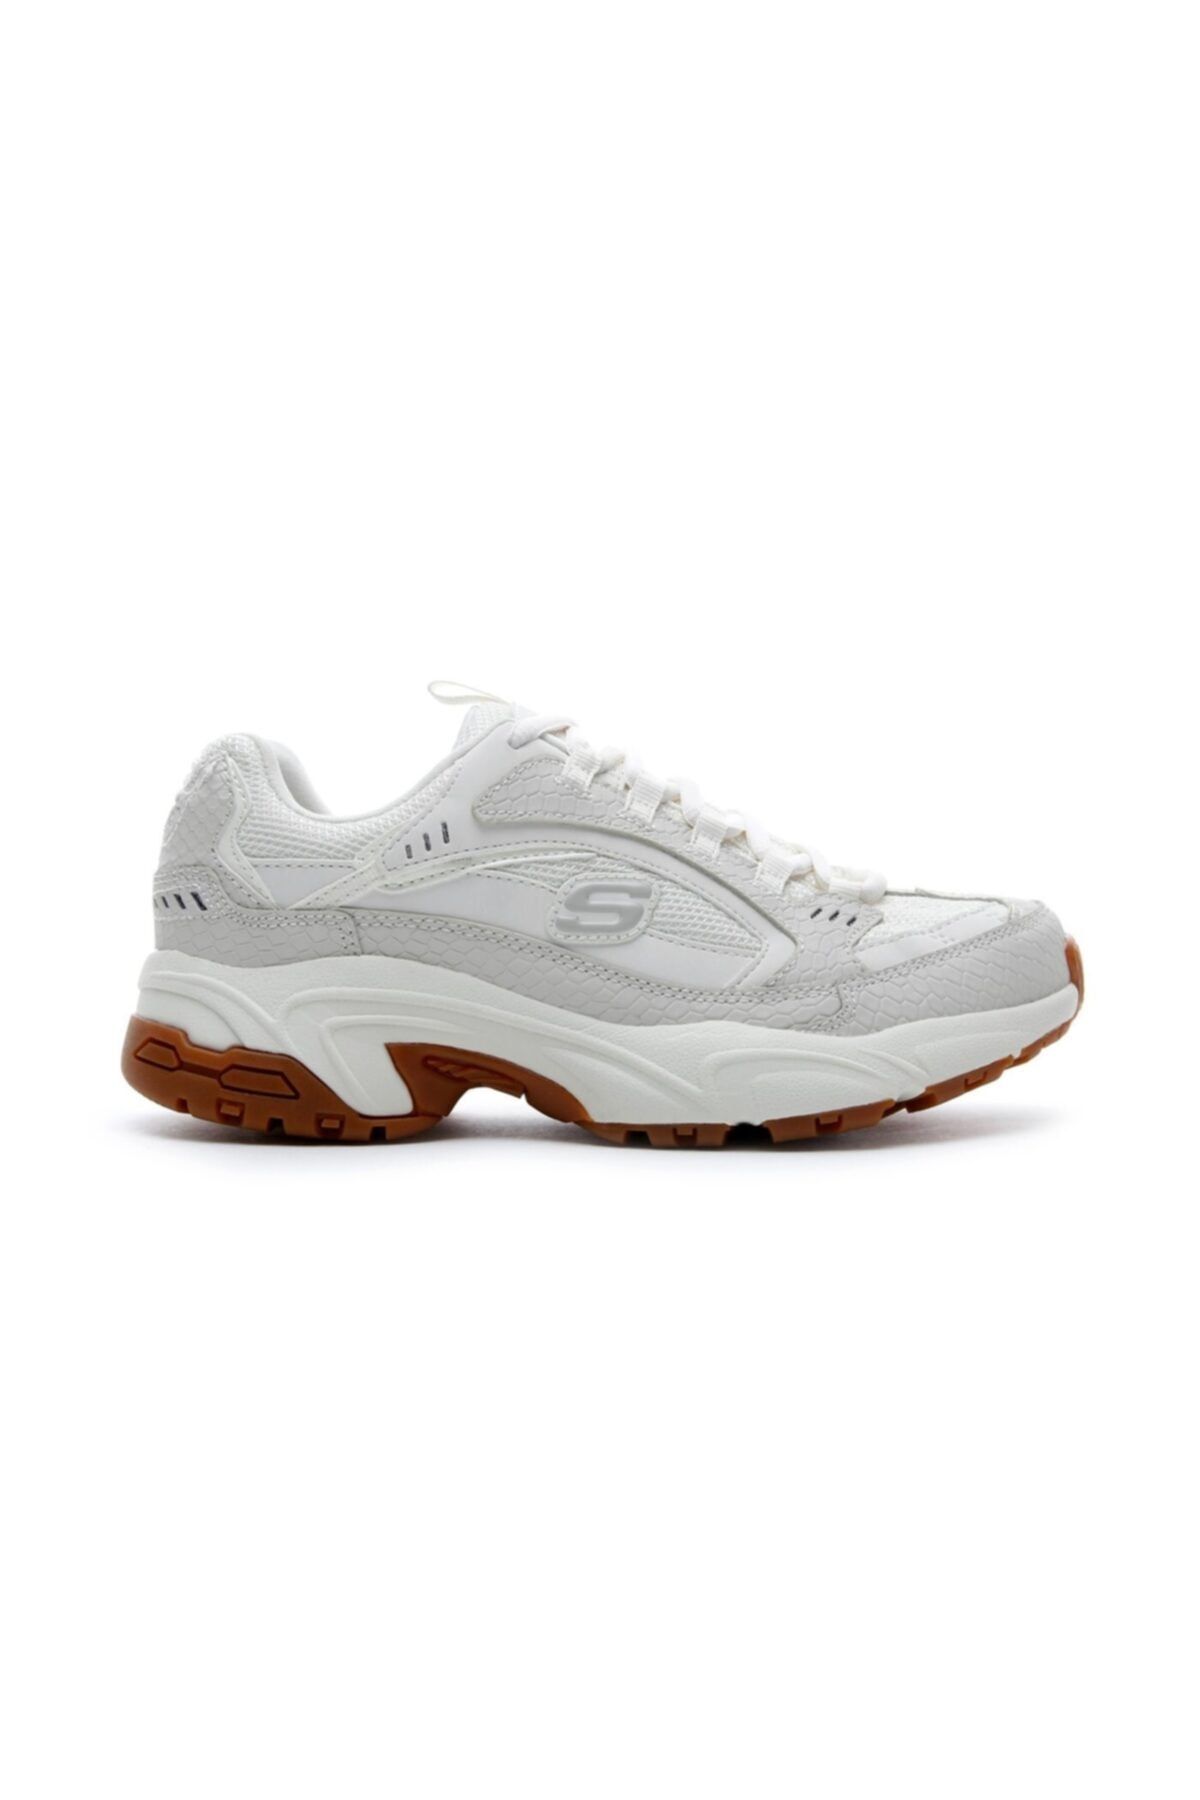 Stamina-classy Kadın Beyaz Sneakers 13455 Fiyatı, Yorumları - Trendyol